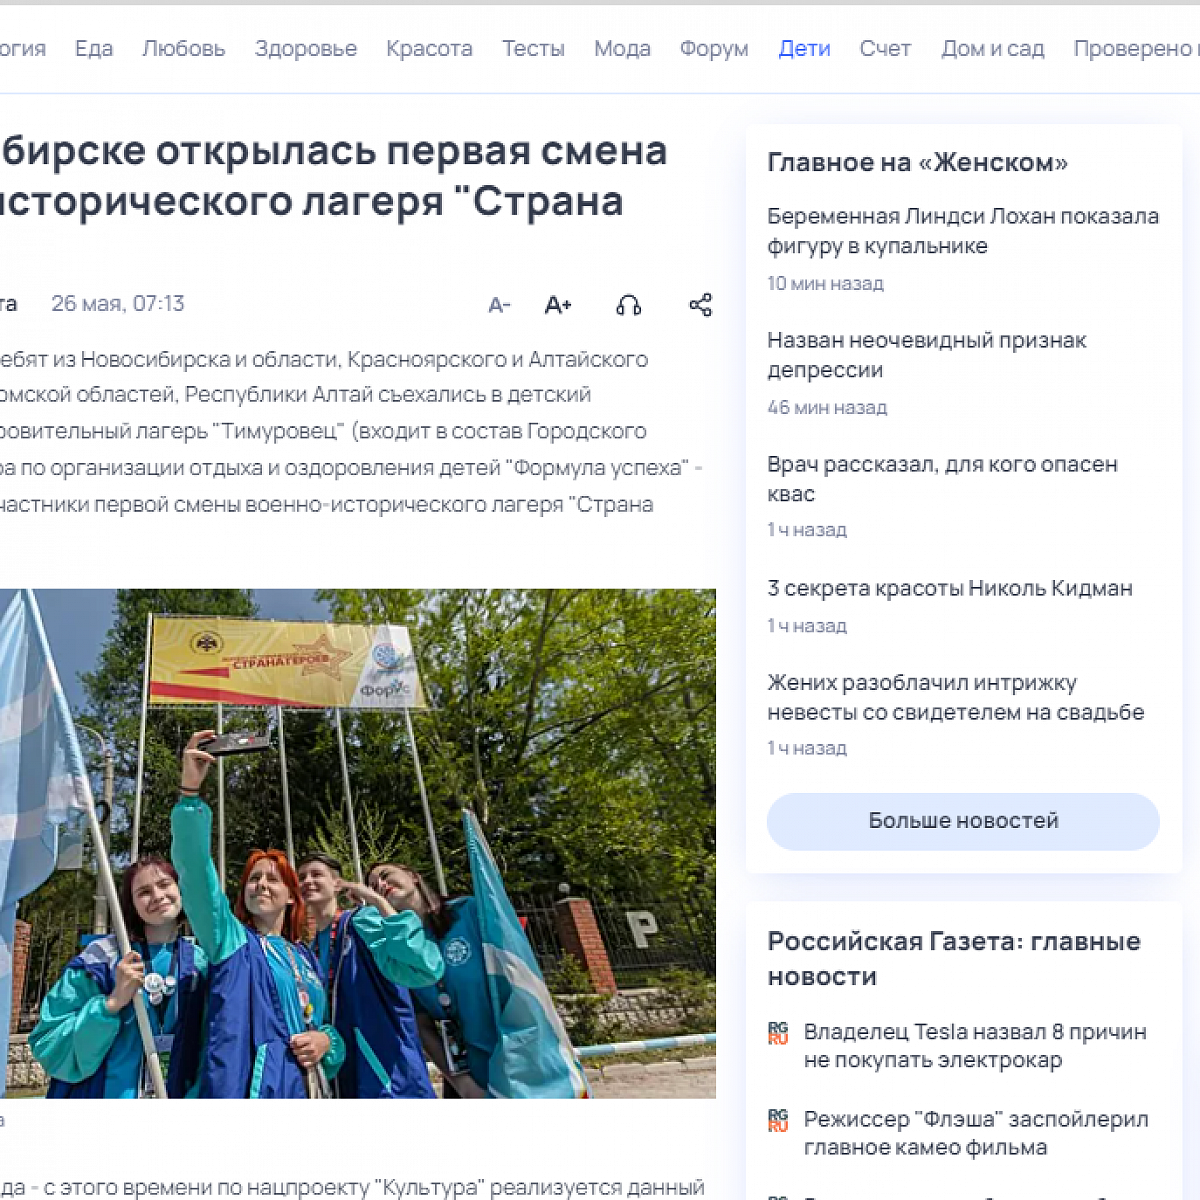 В Новосибирске открылась первая смена военно-исторического лагеря "Страна Героев"